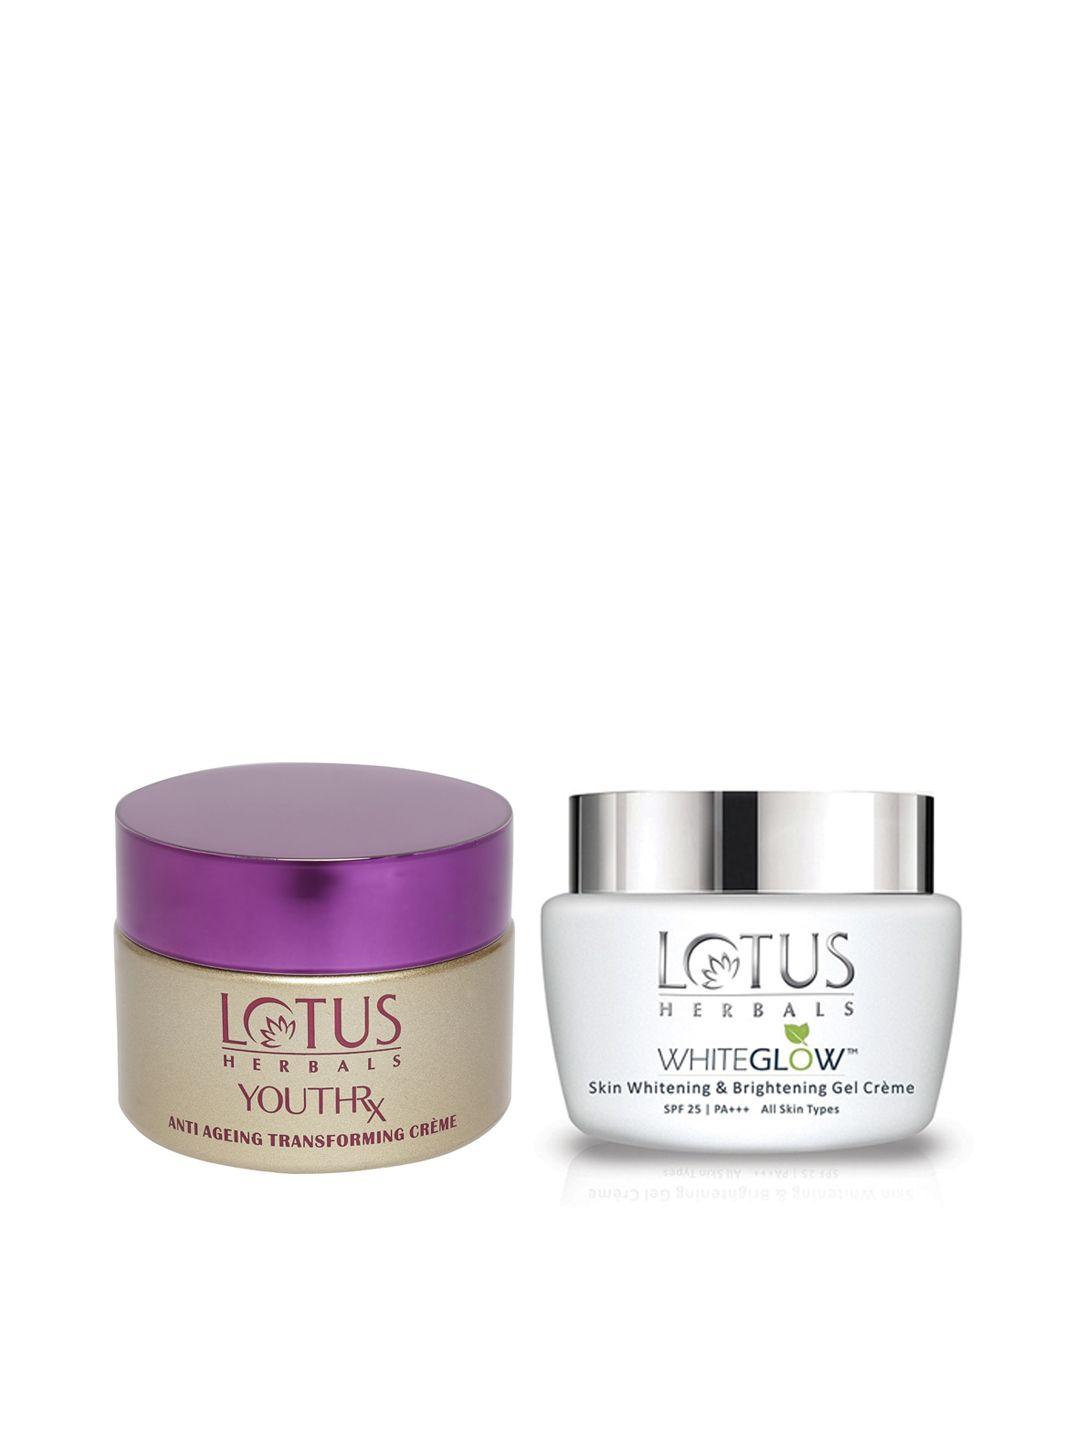 lotus herbals sustainable set of anti-ageing transforming creme & spf 25++ gel creme